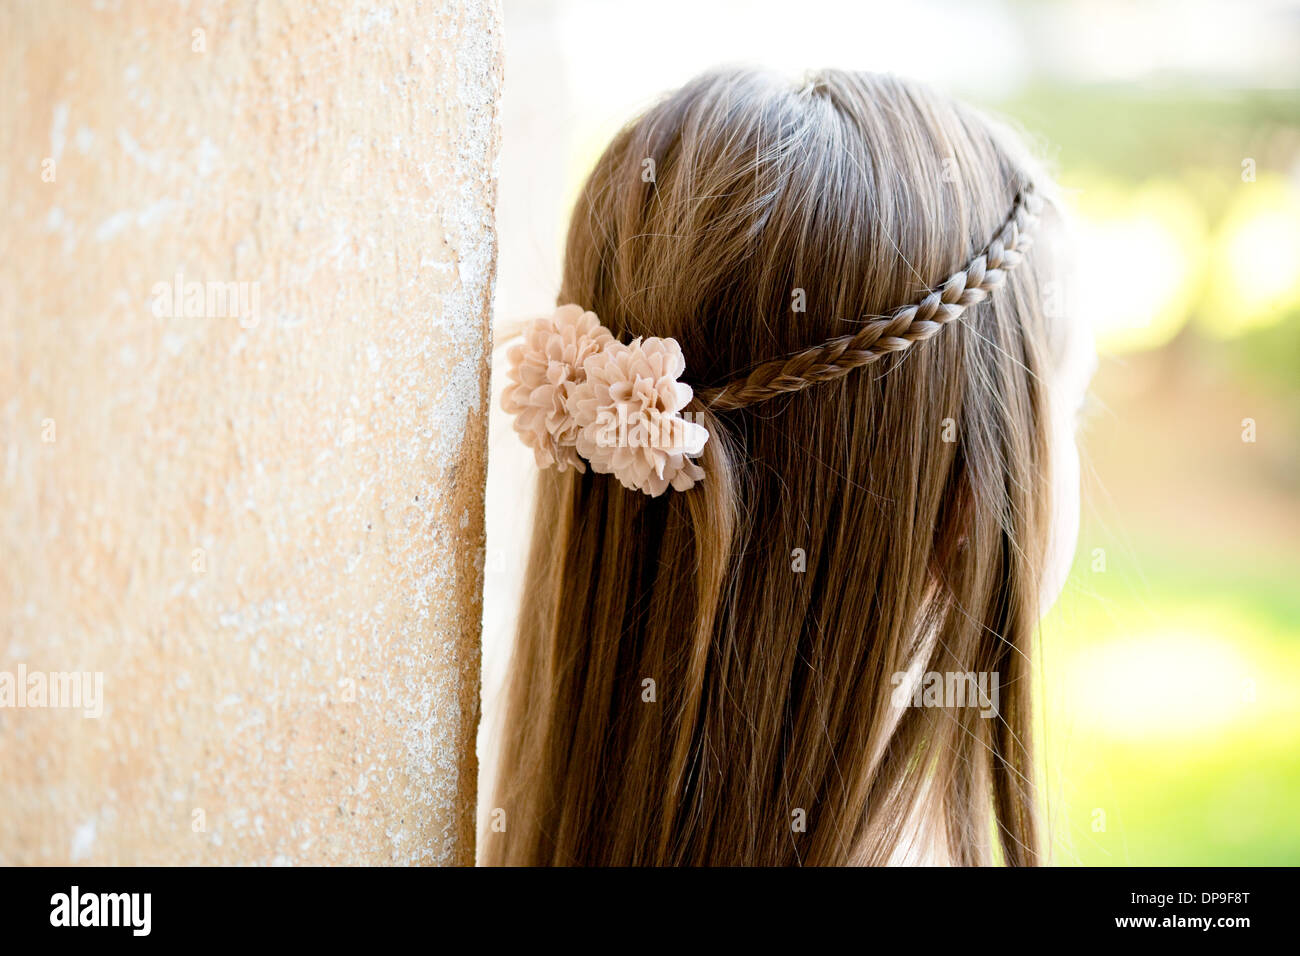 girl, hair, flower, braid, youth, flower girl Stock Photo